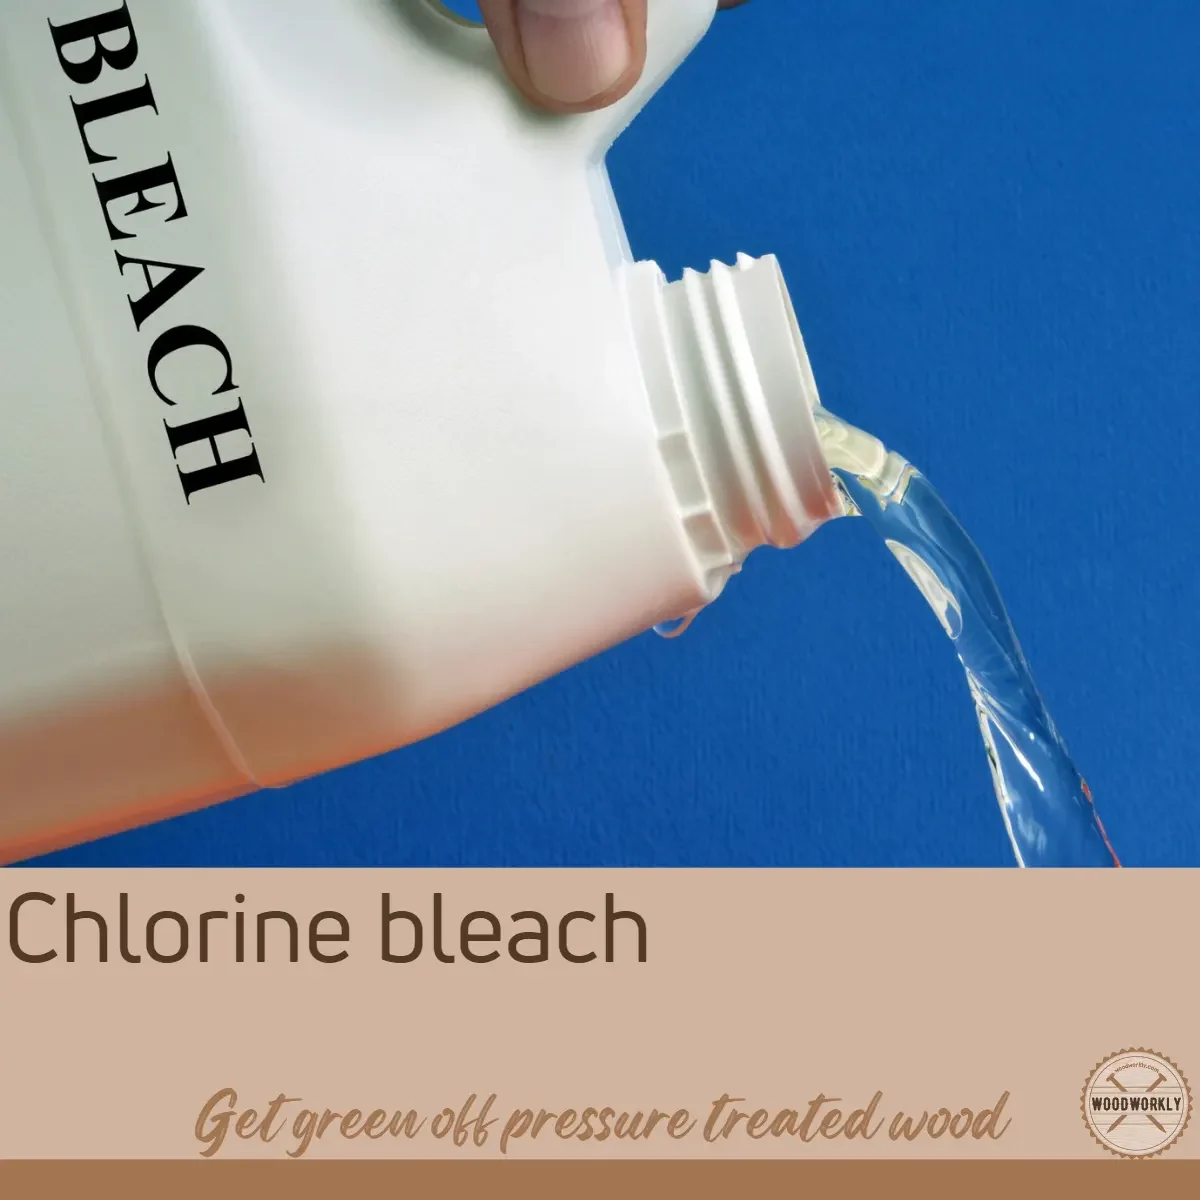 Chlorine bleach